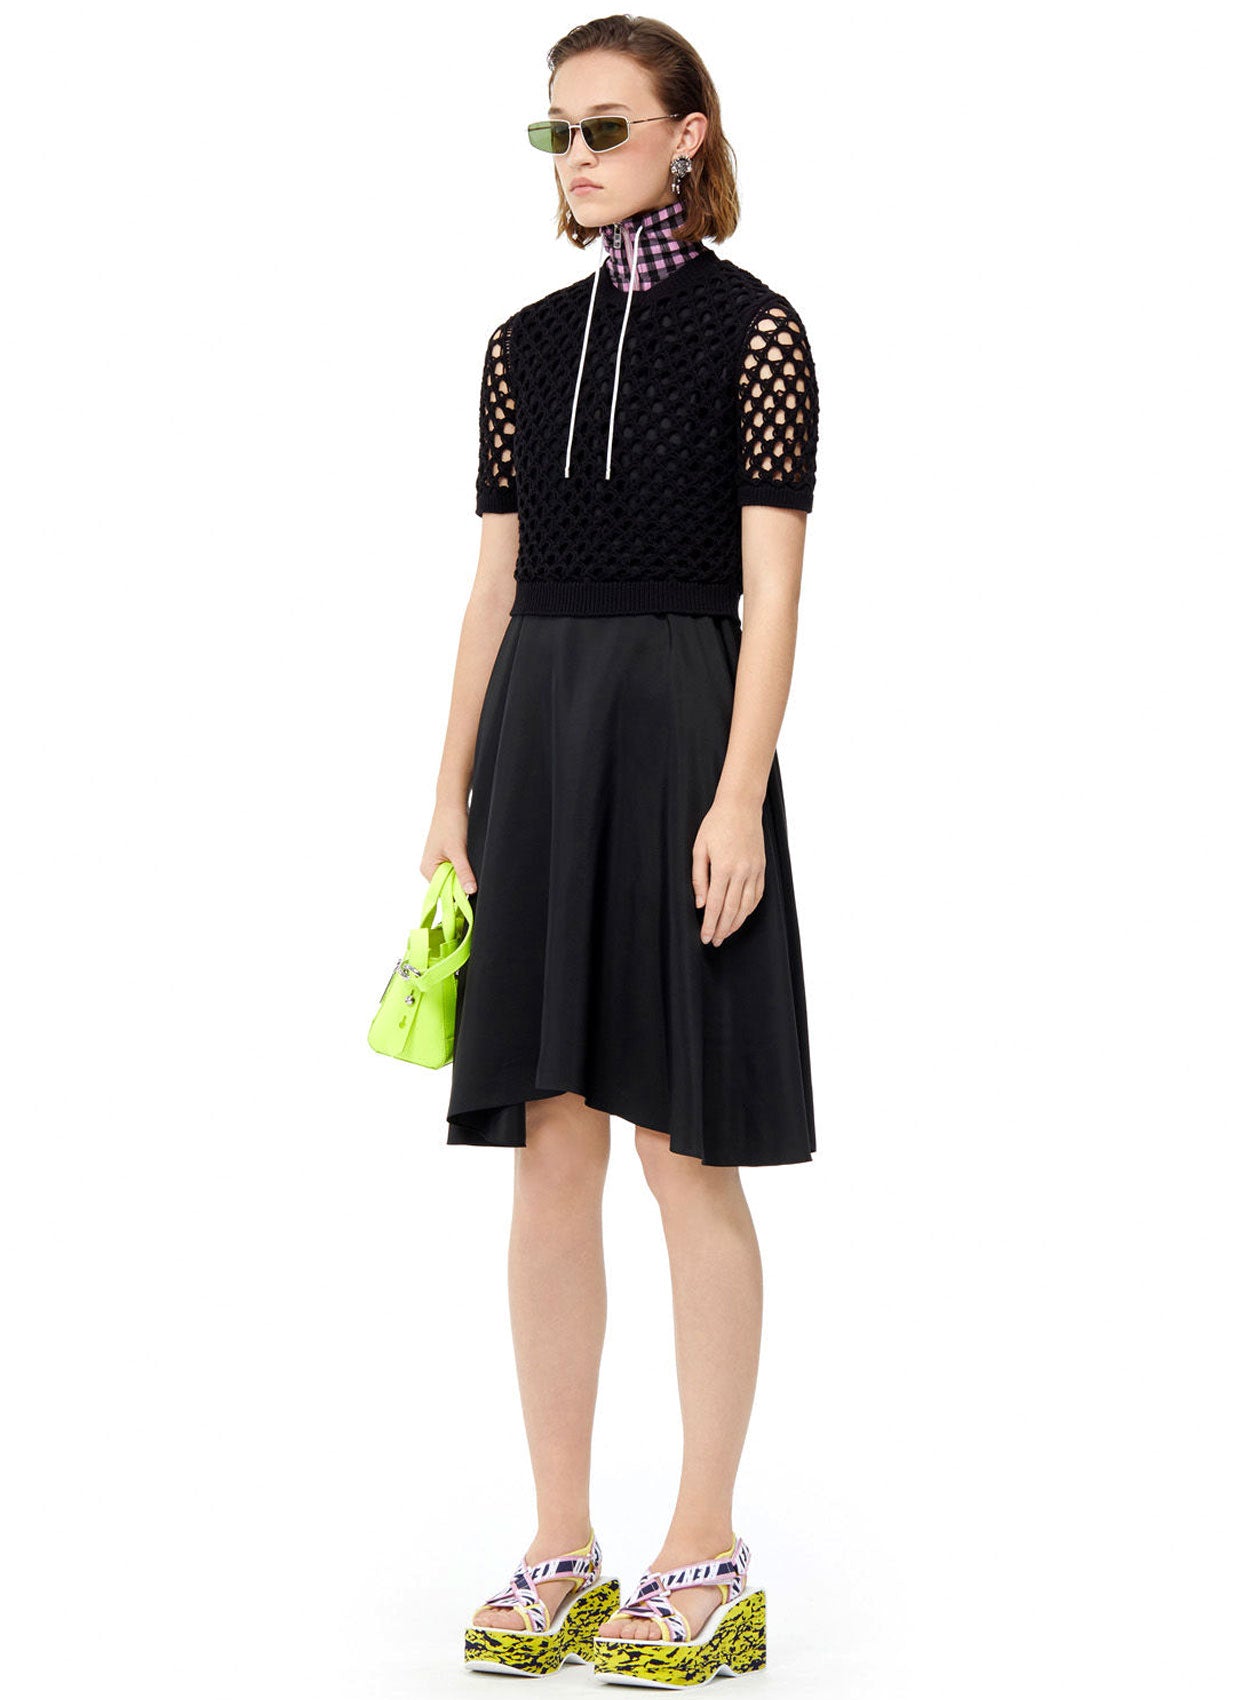 Kenzo Elbise-Libas Trendy Fashion Store